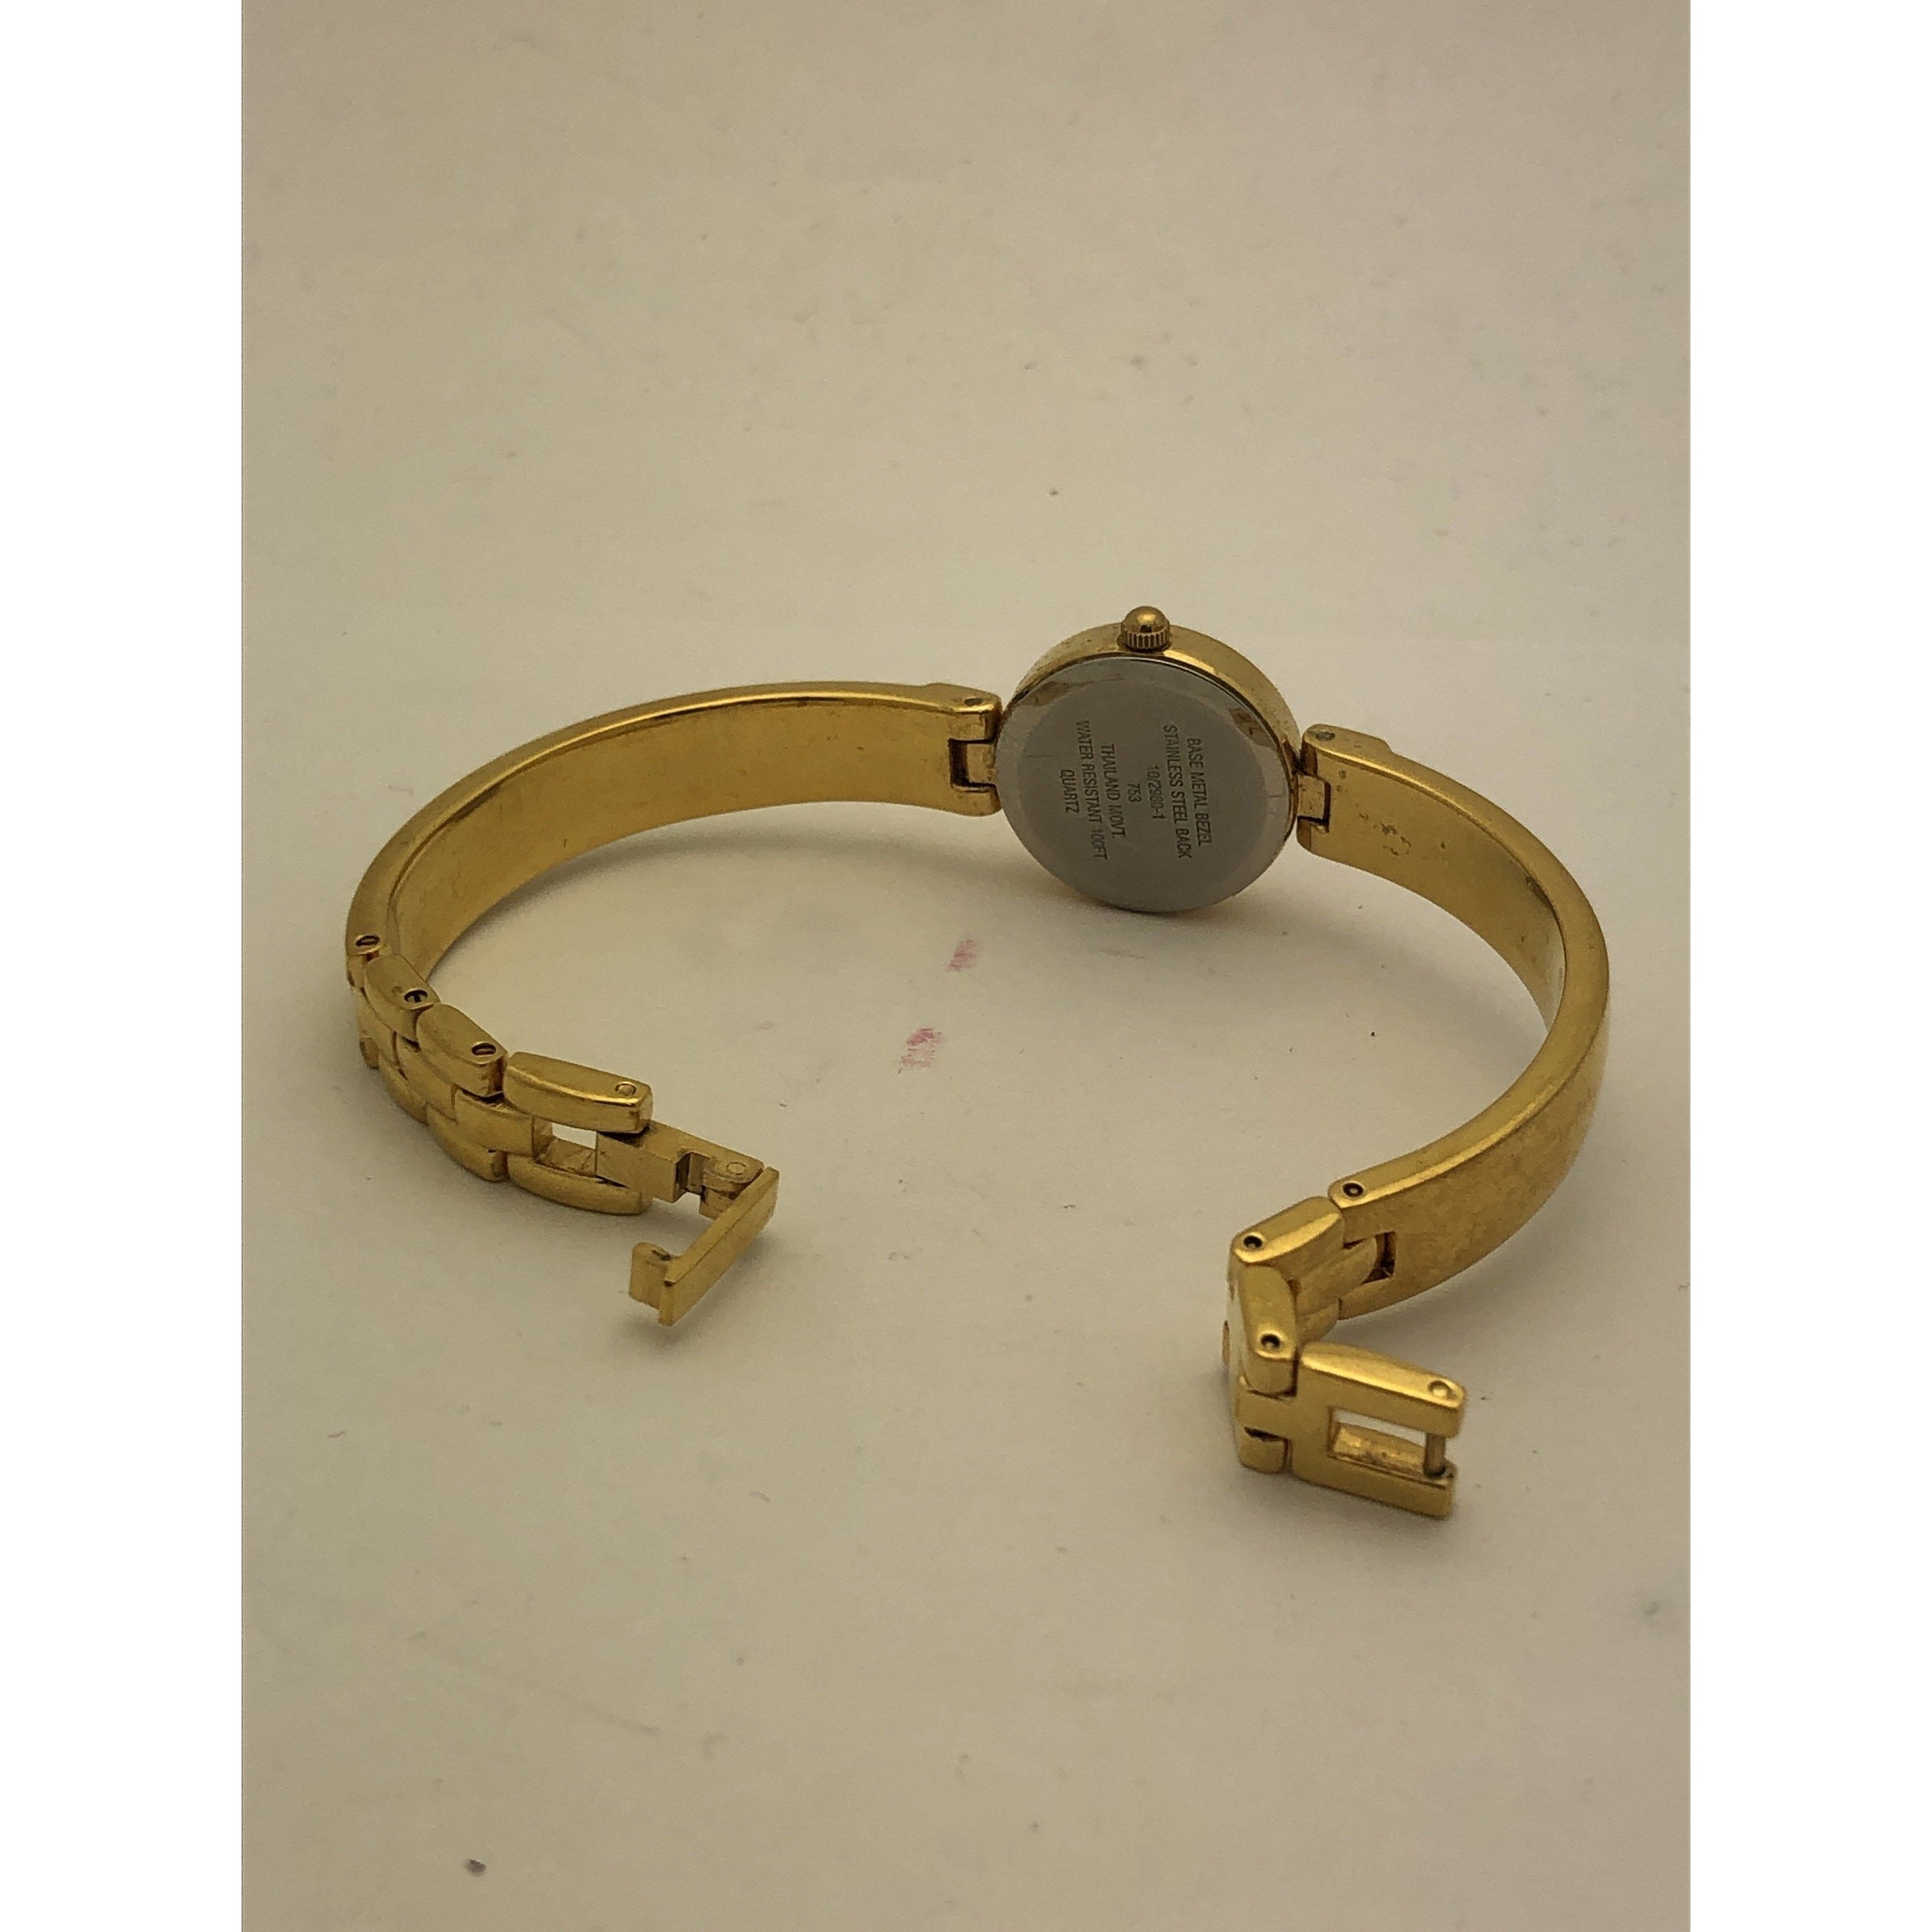 Anne Klein Women's Bracelet Watch at Rs 4899.00 | Sadar Bazaar | New Delhi  | ID: 2849837482655